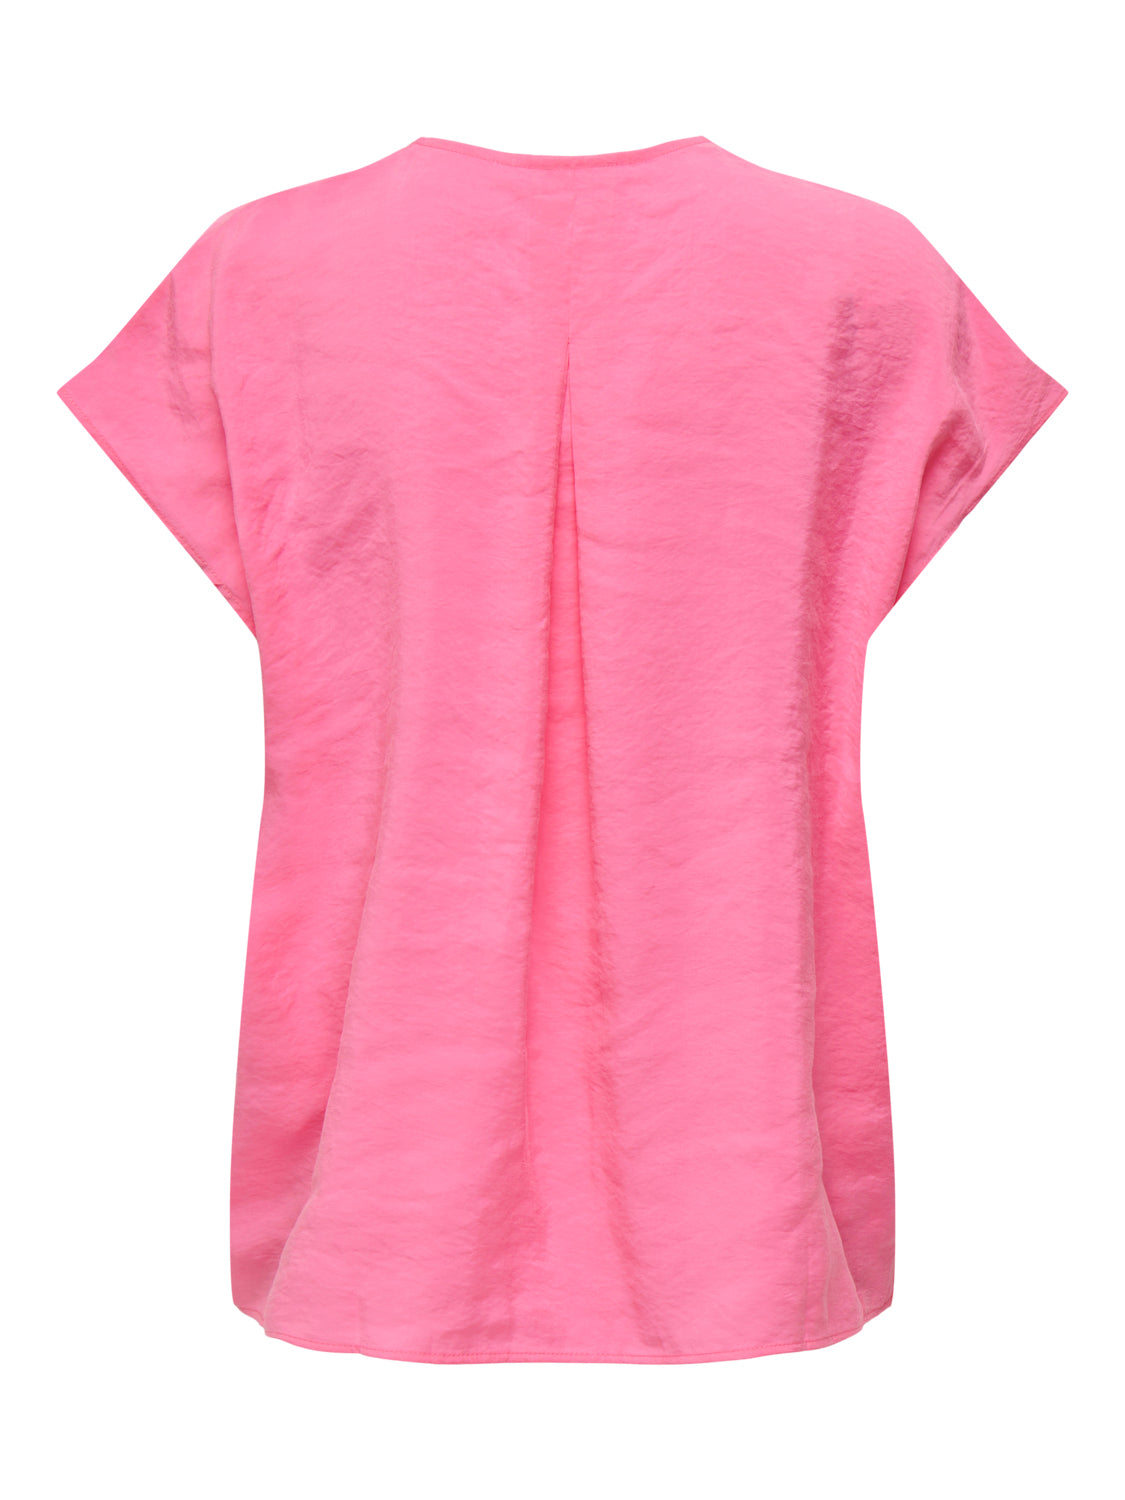 PGZAZIMA T-Shirts & Tops - Pink Carnation